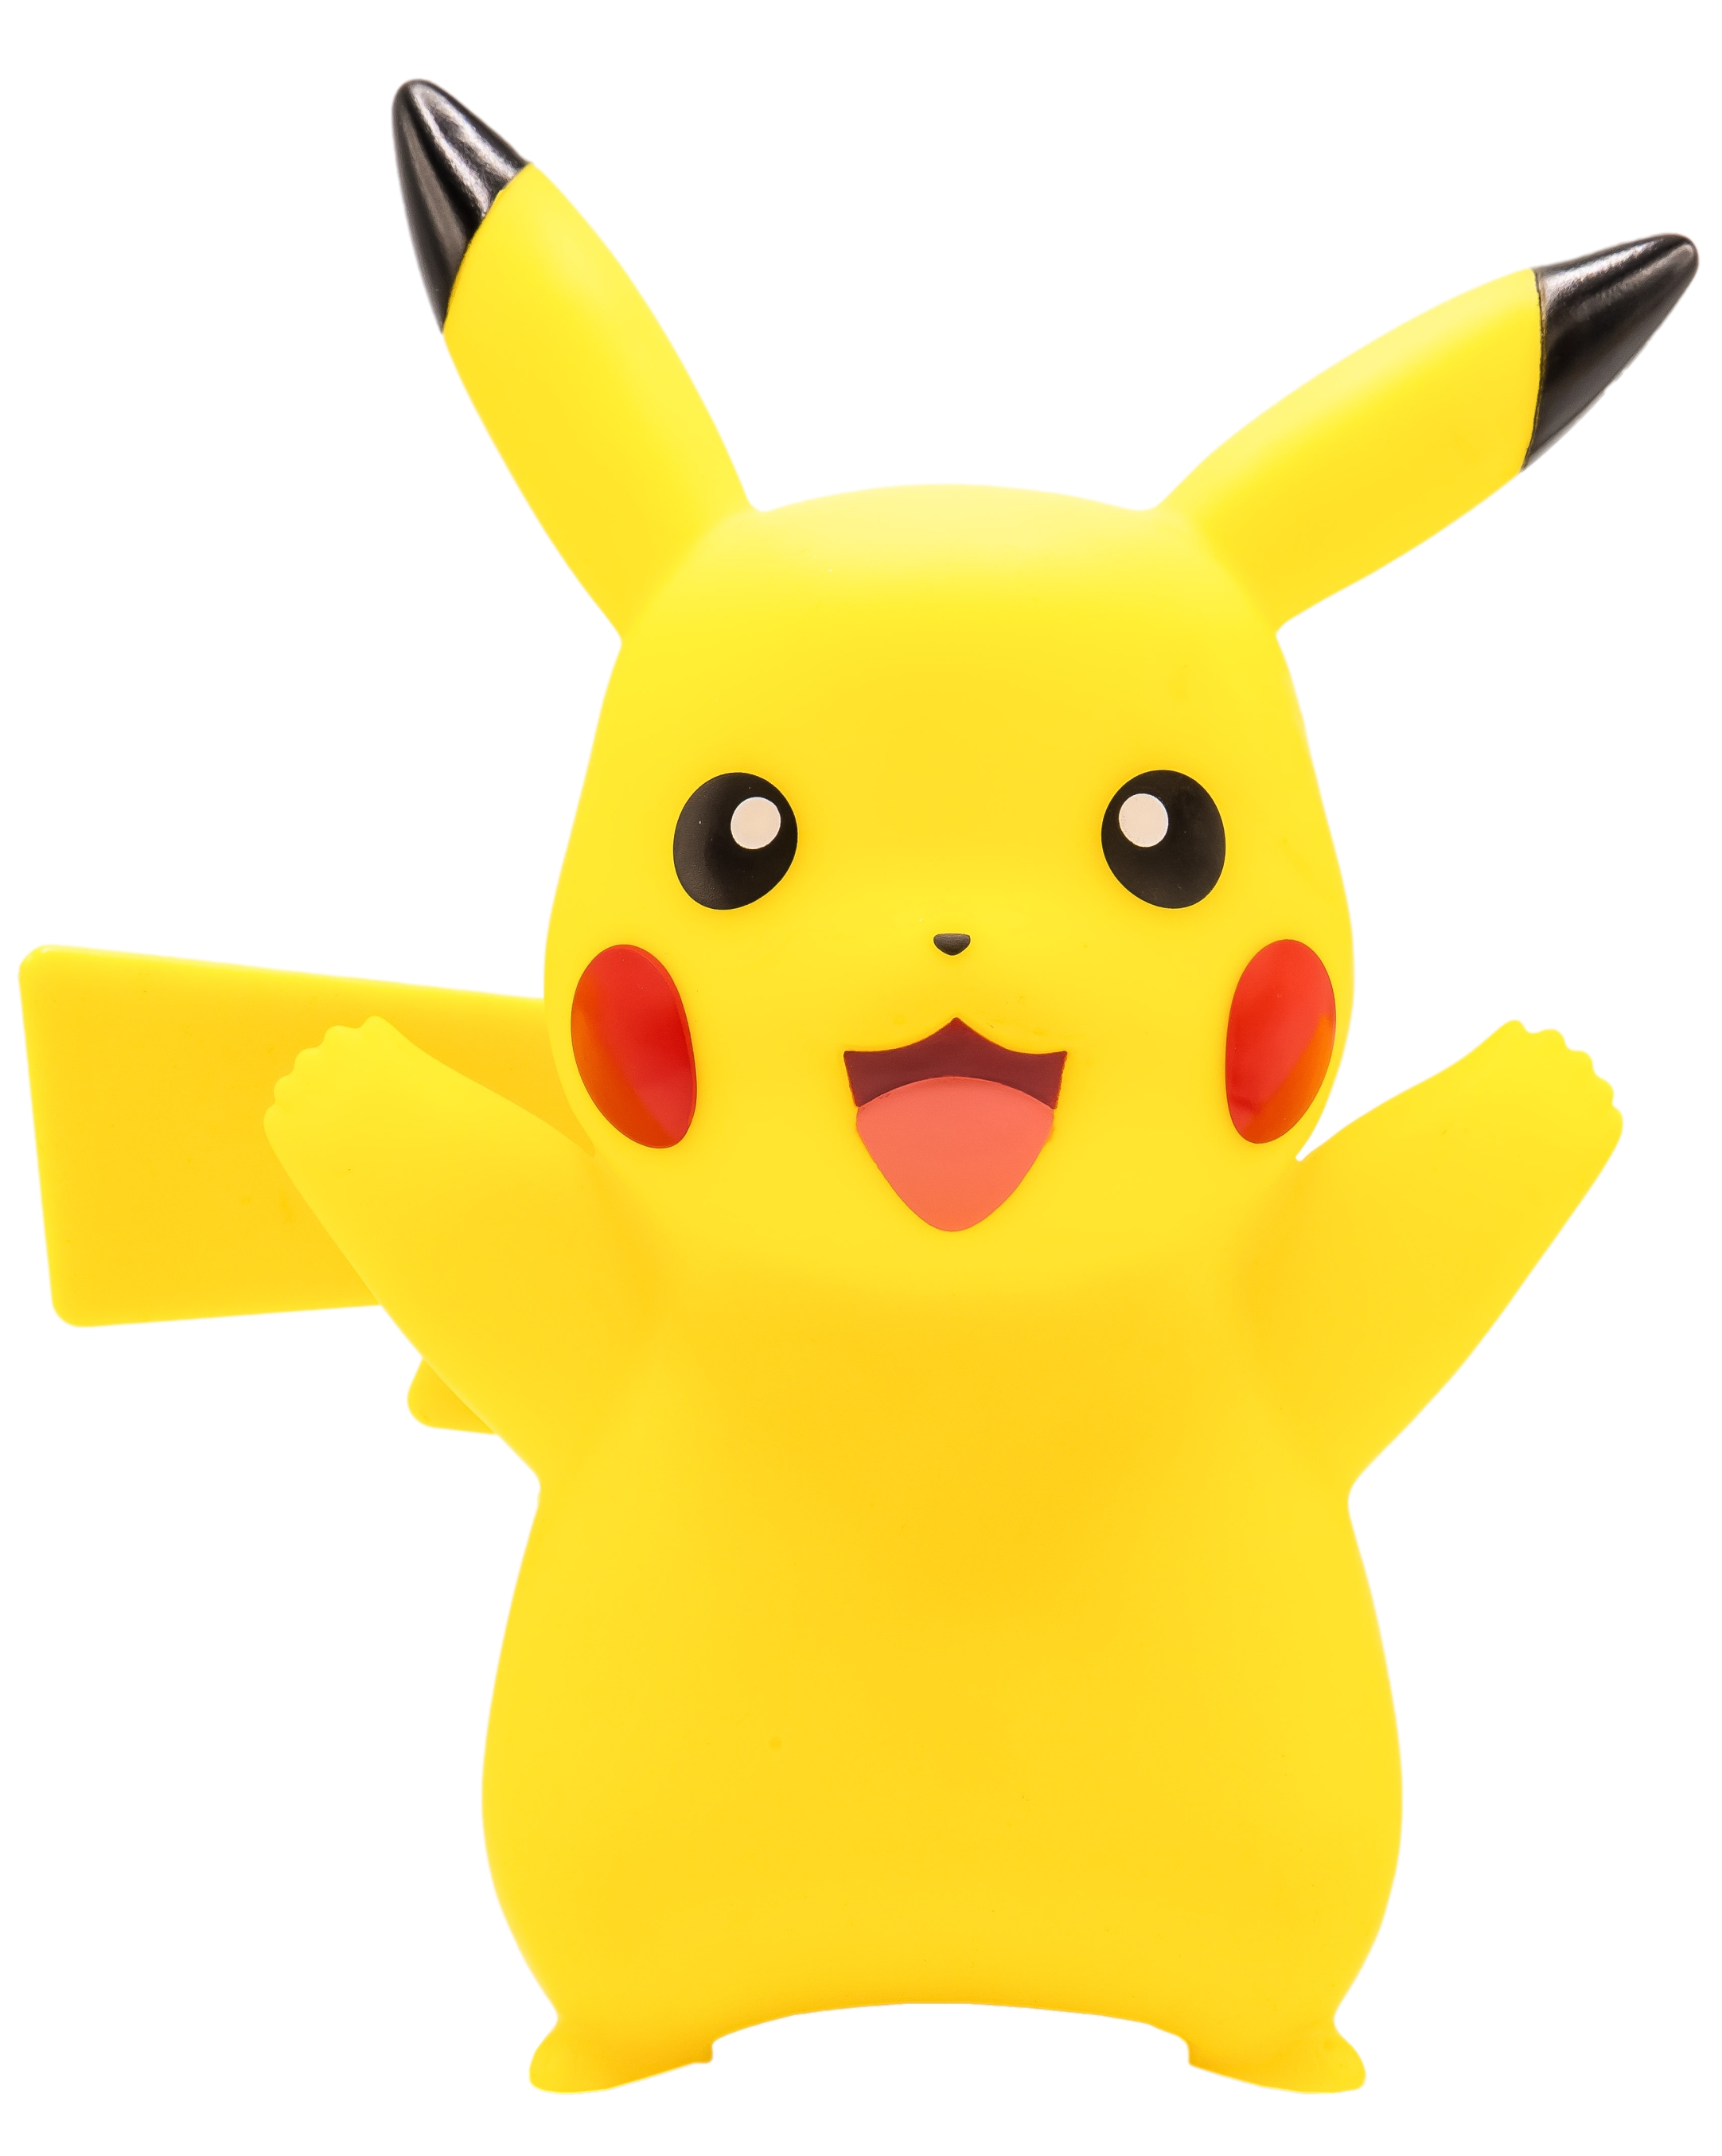 Réveil lumineux Bulbizarre, Salamèche ou Pikachu Sleeping - Pokémon -  Teknofun